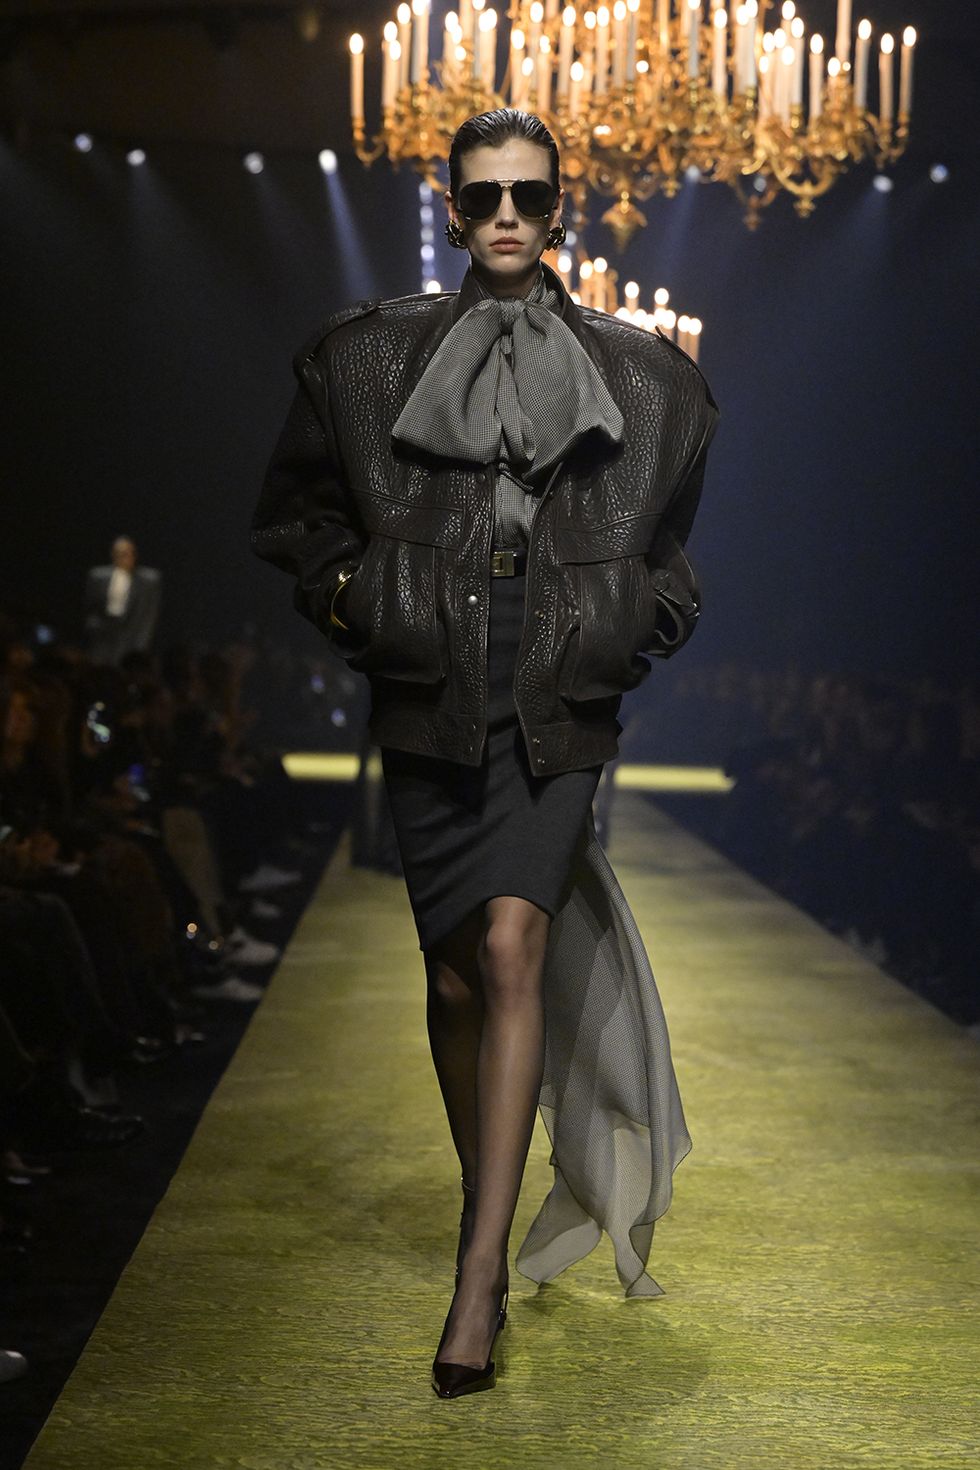 R.E.A.D] Yves Saint Laurent Catwalk The Complete Haute Couture